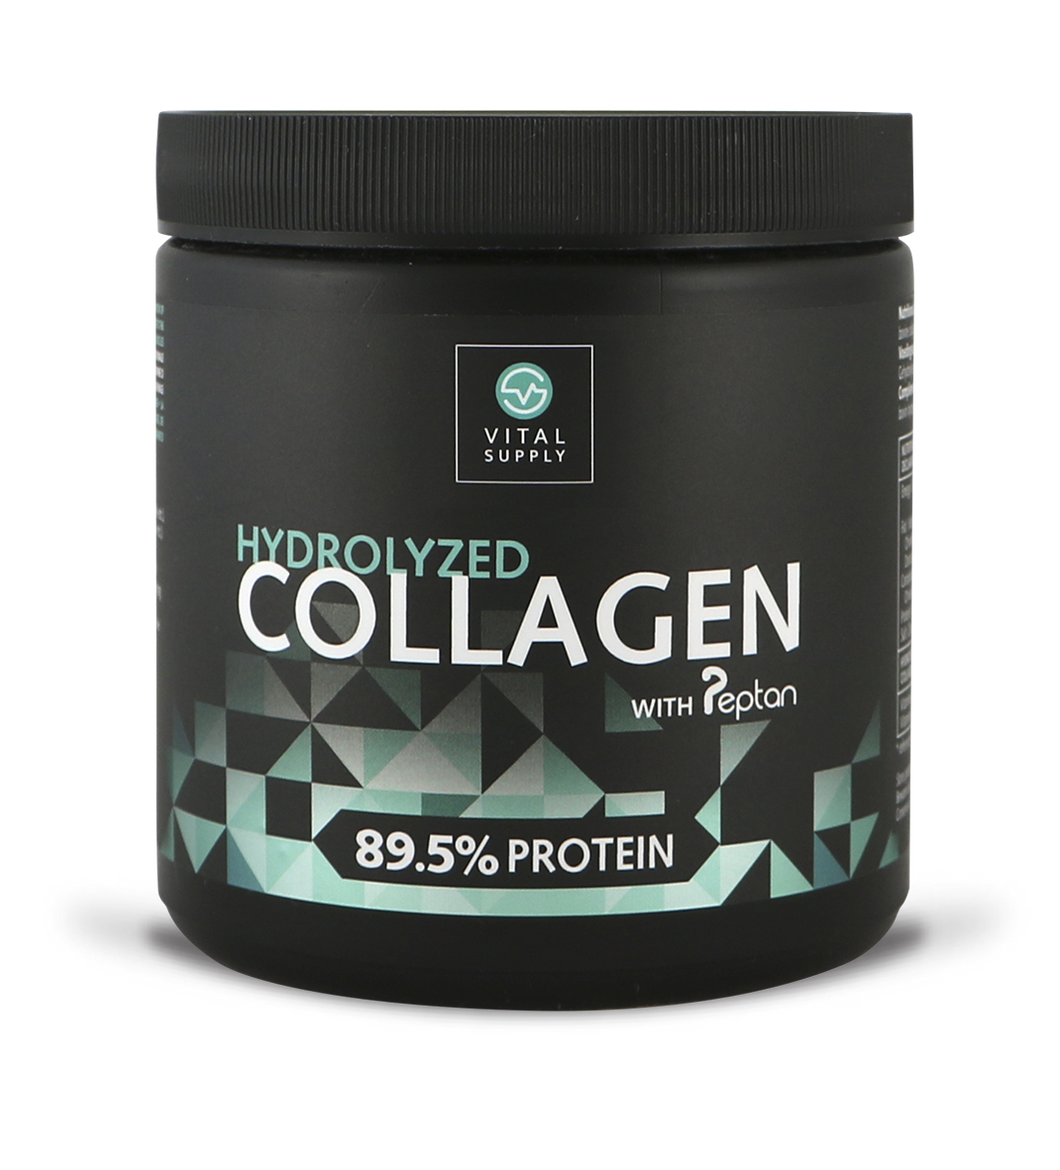 Vital supply hydrolyzed collagen